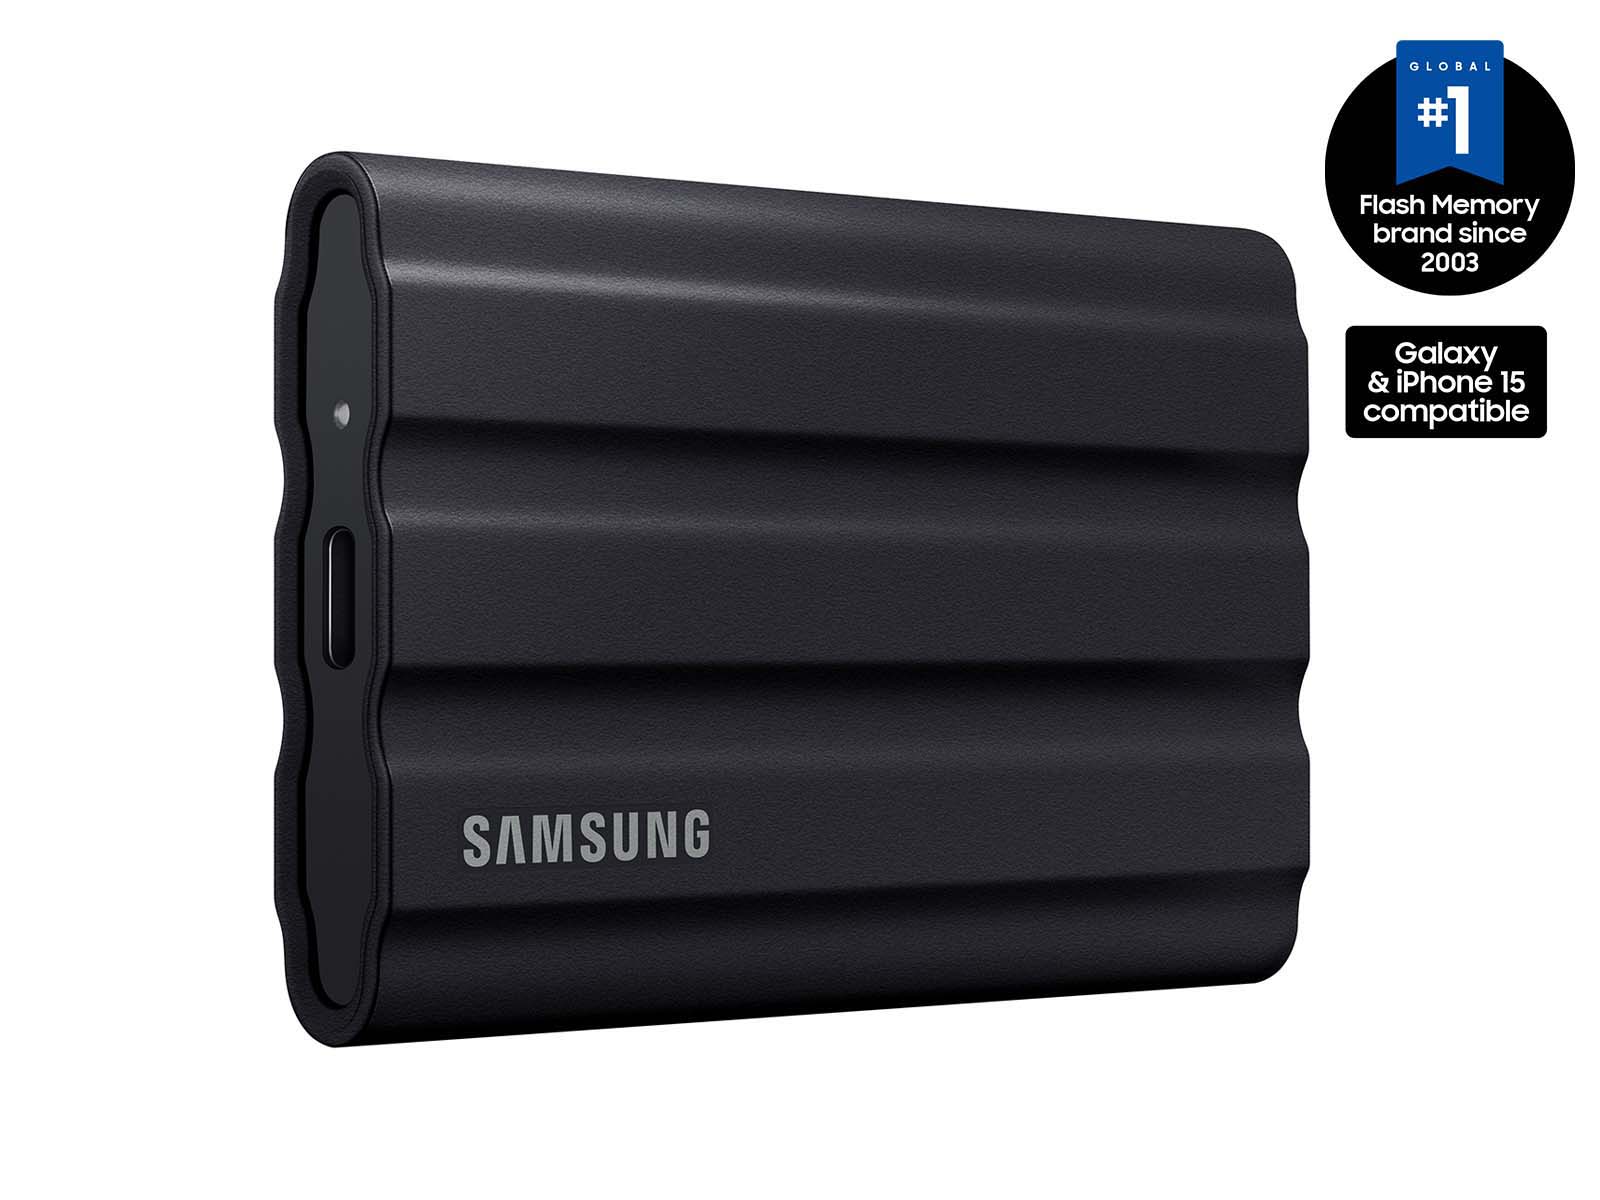 Portable SSD T7 Shield USB 3.2 1TB (Black)